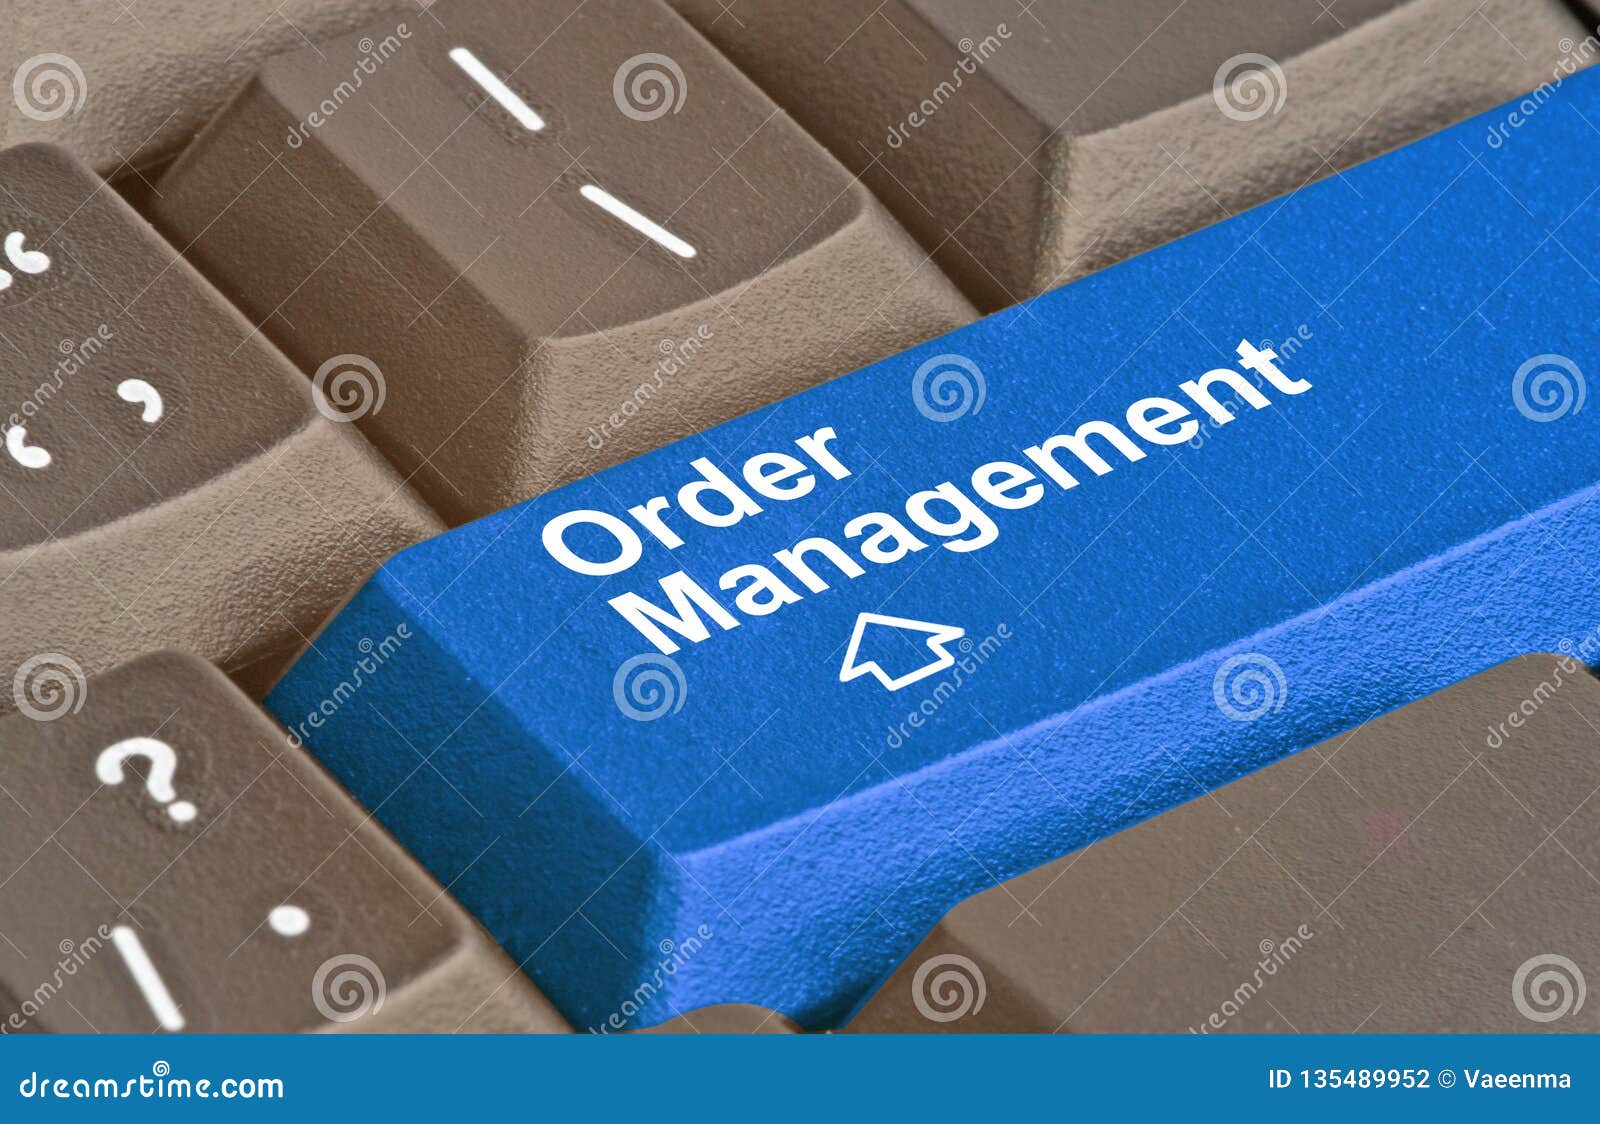 key for order management